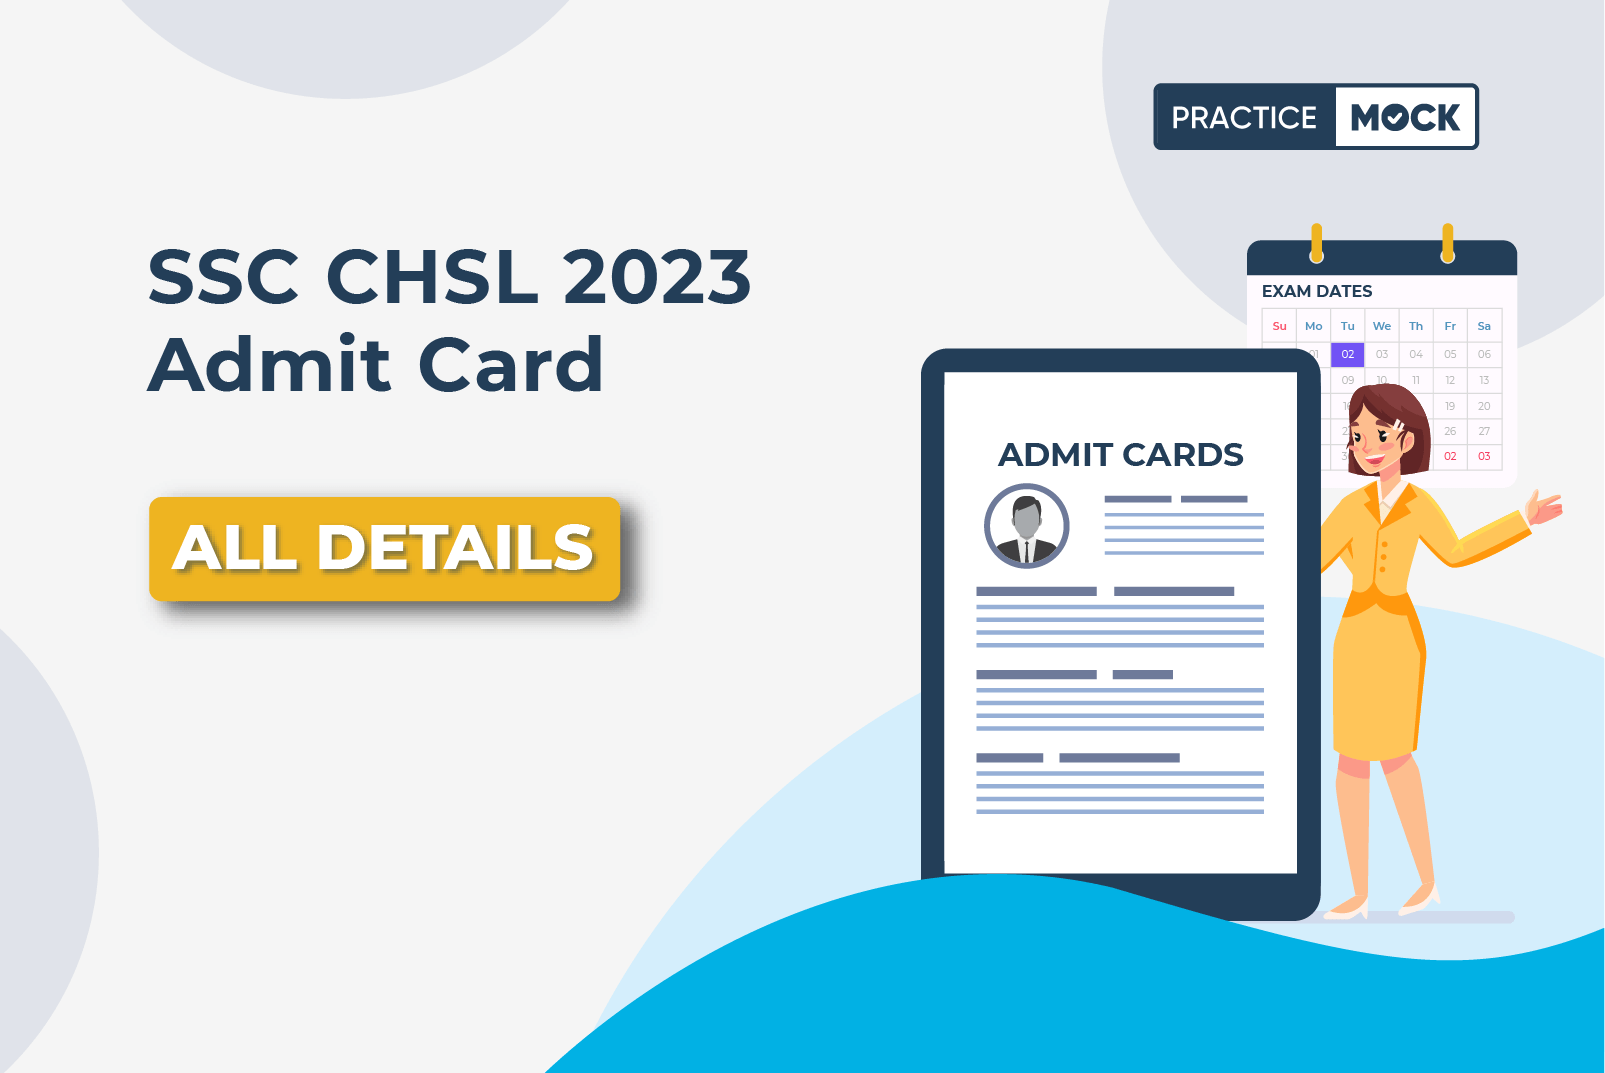 SSC CHSL Admit Card 2023- All Details